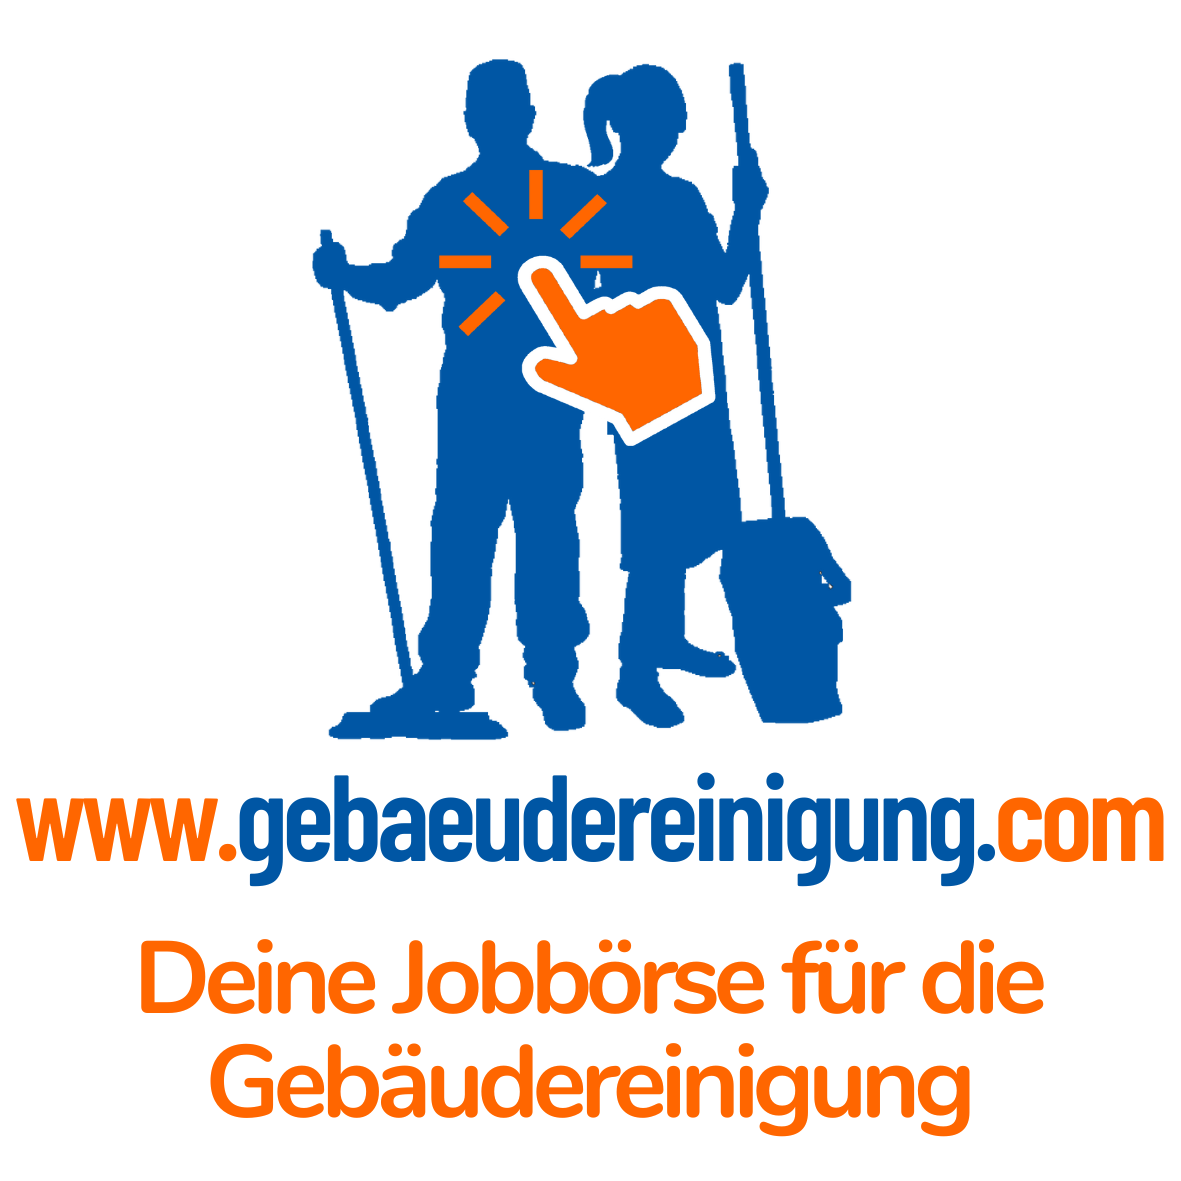 Lieblang Dienstleistungsgruppe Management GmbH